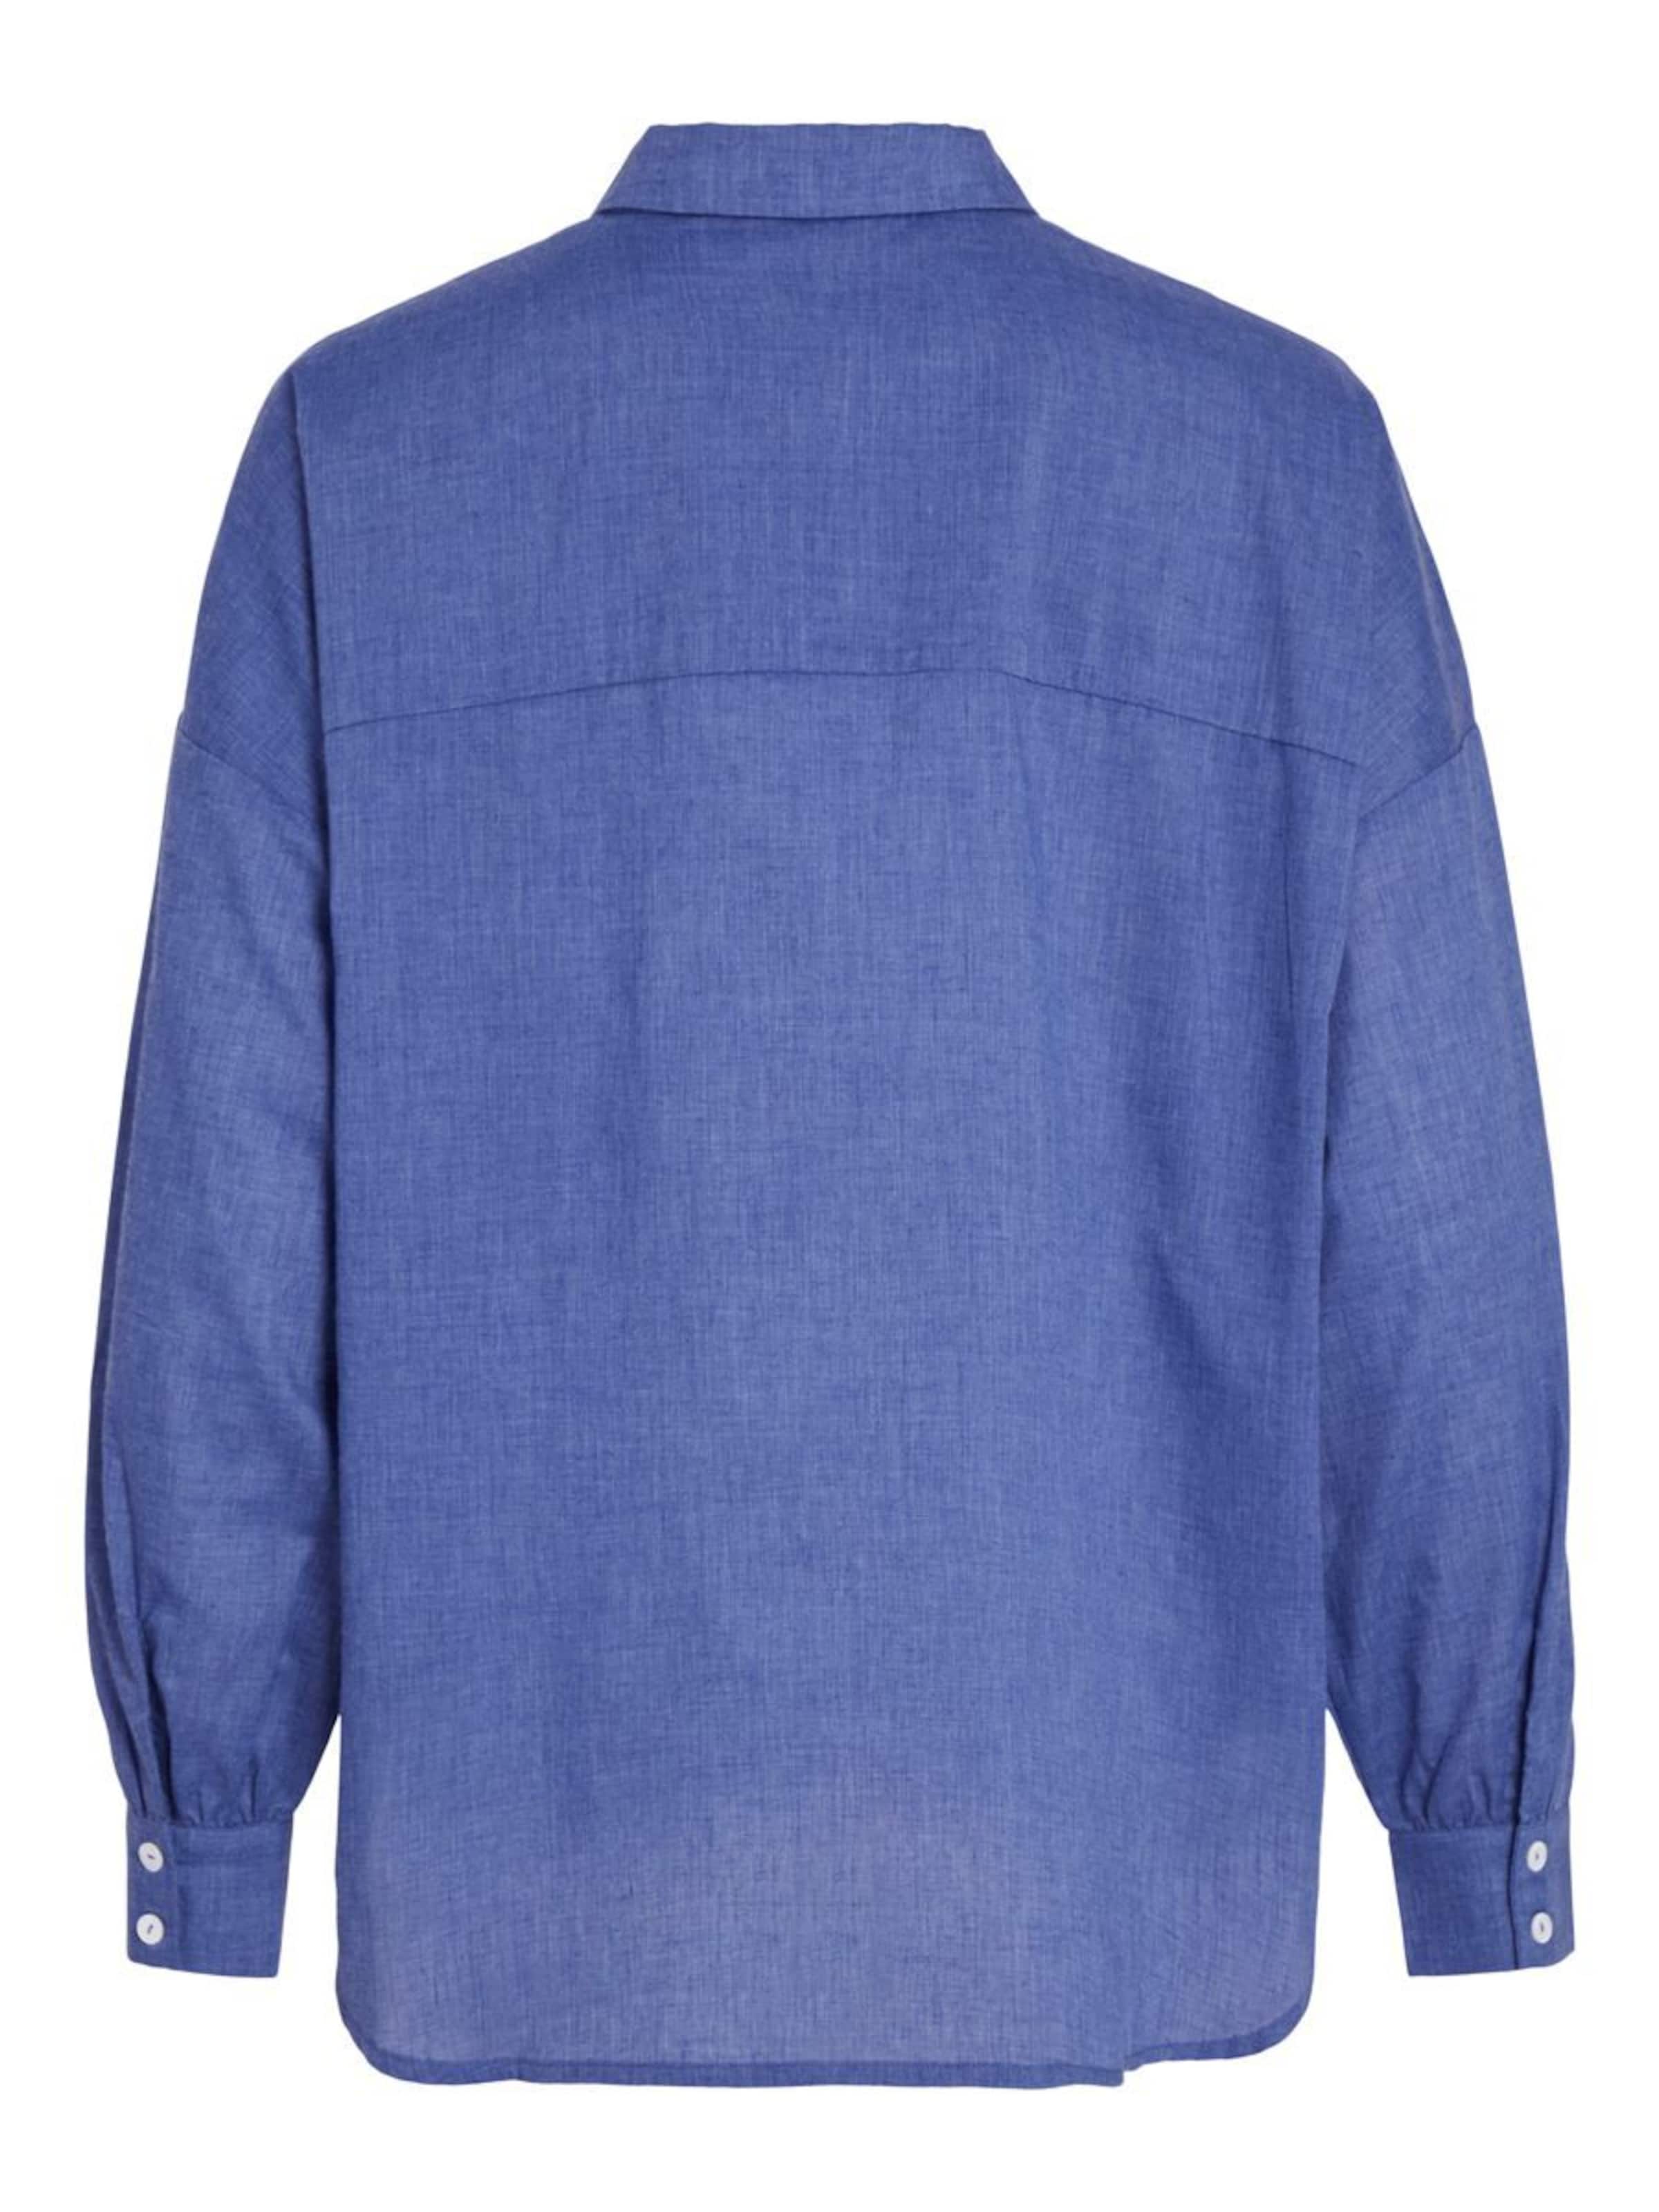 Frauen Shirts & Tops VILA Bluse in Blau - XY44651